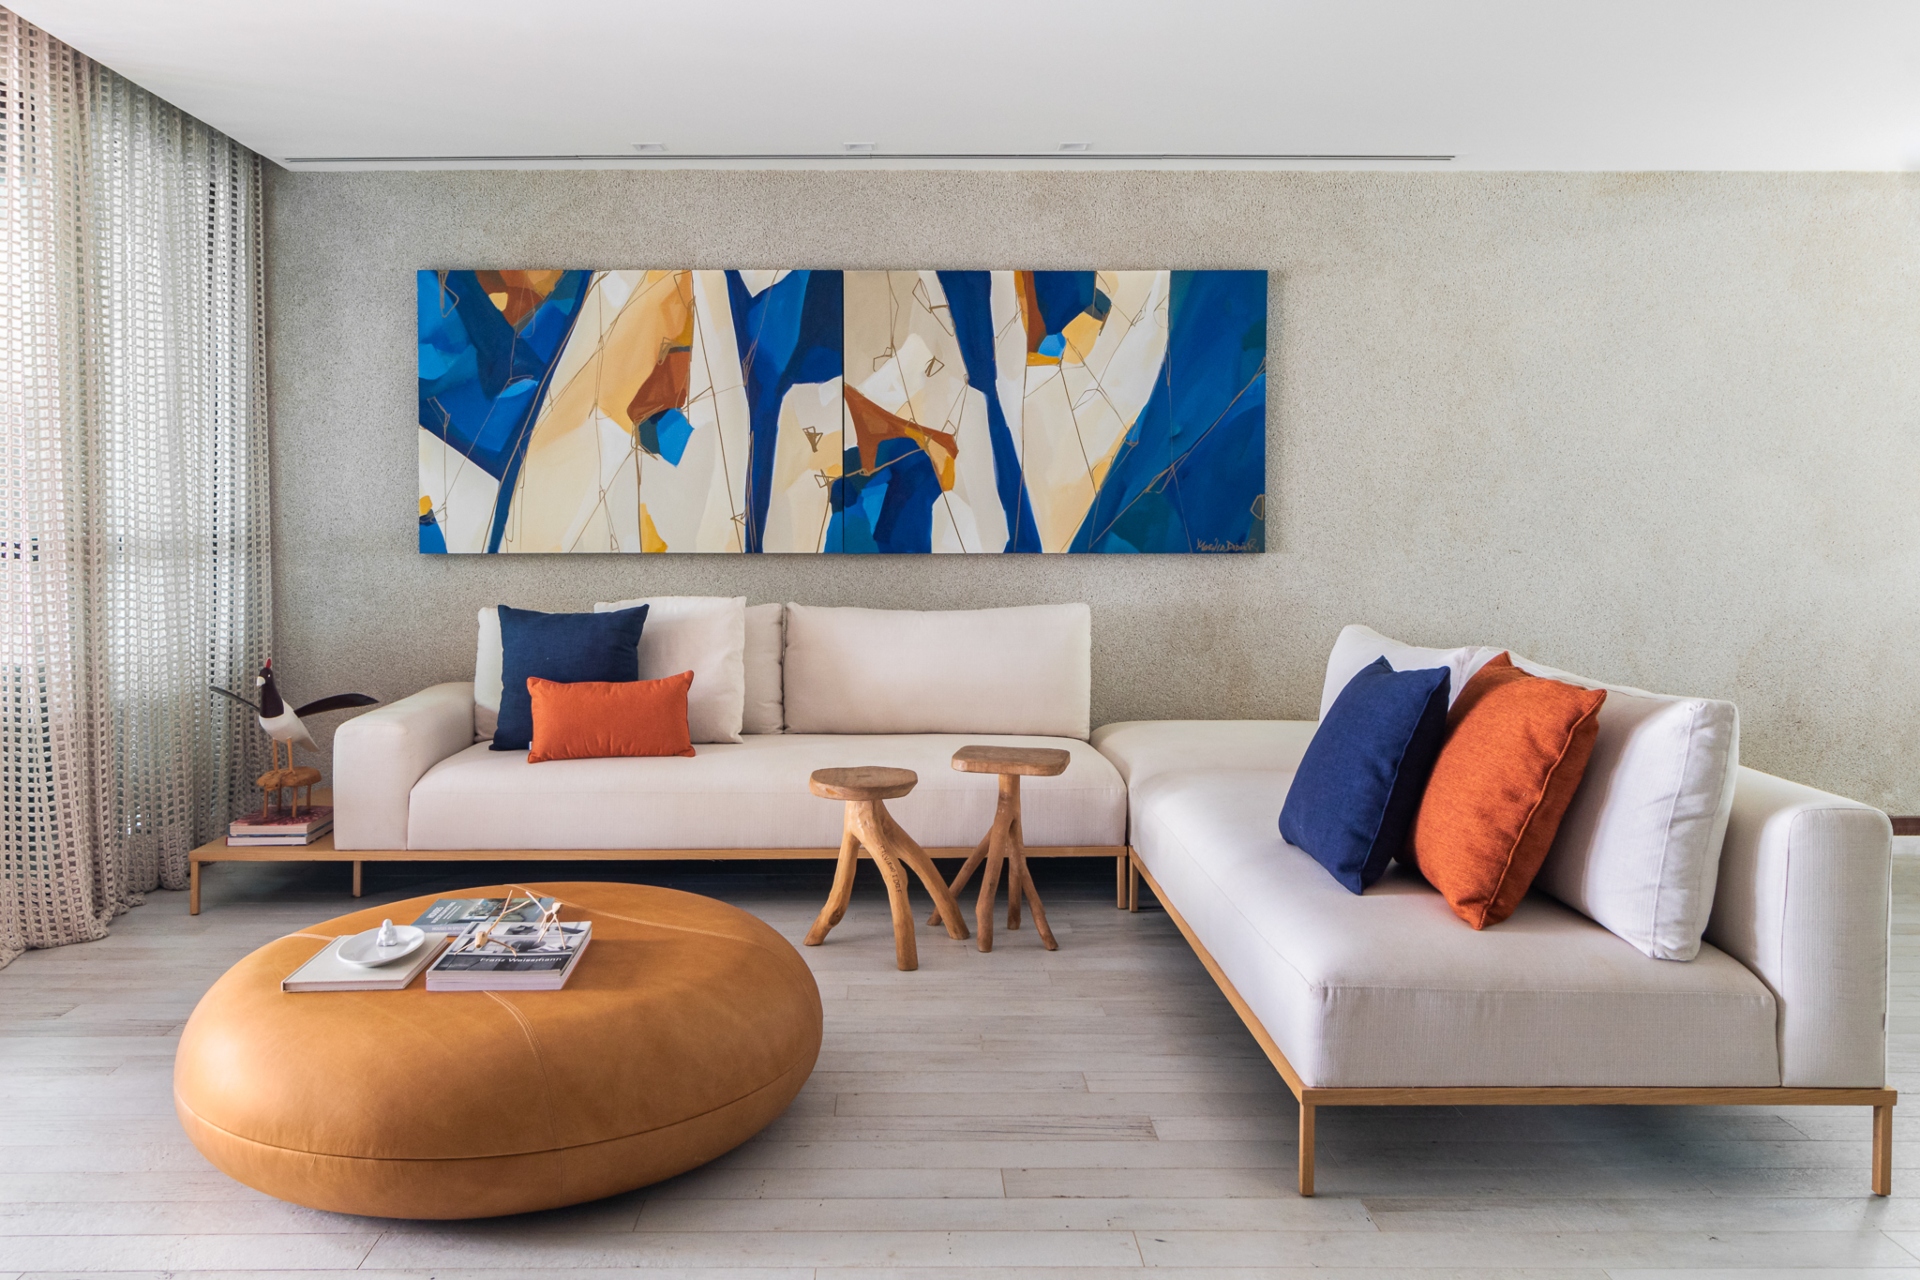 Sala de estar com sofás brancos com elementos nas cores azul e terracota para ter uma casa simples e bonita.